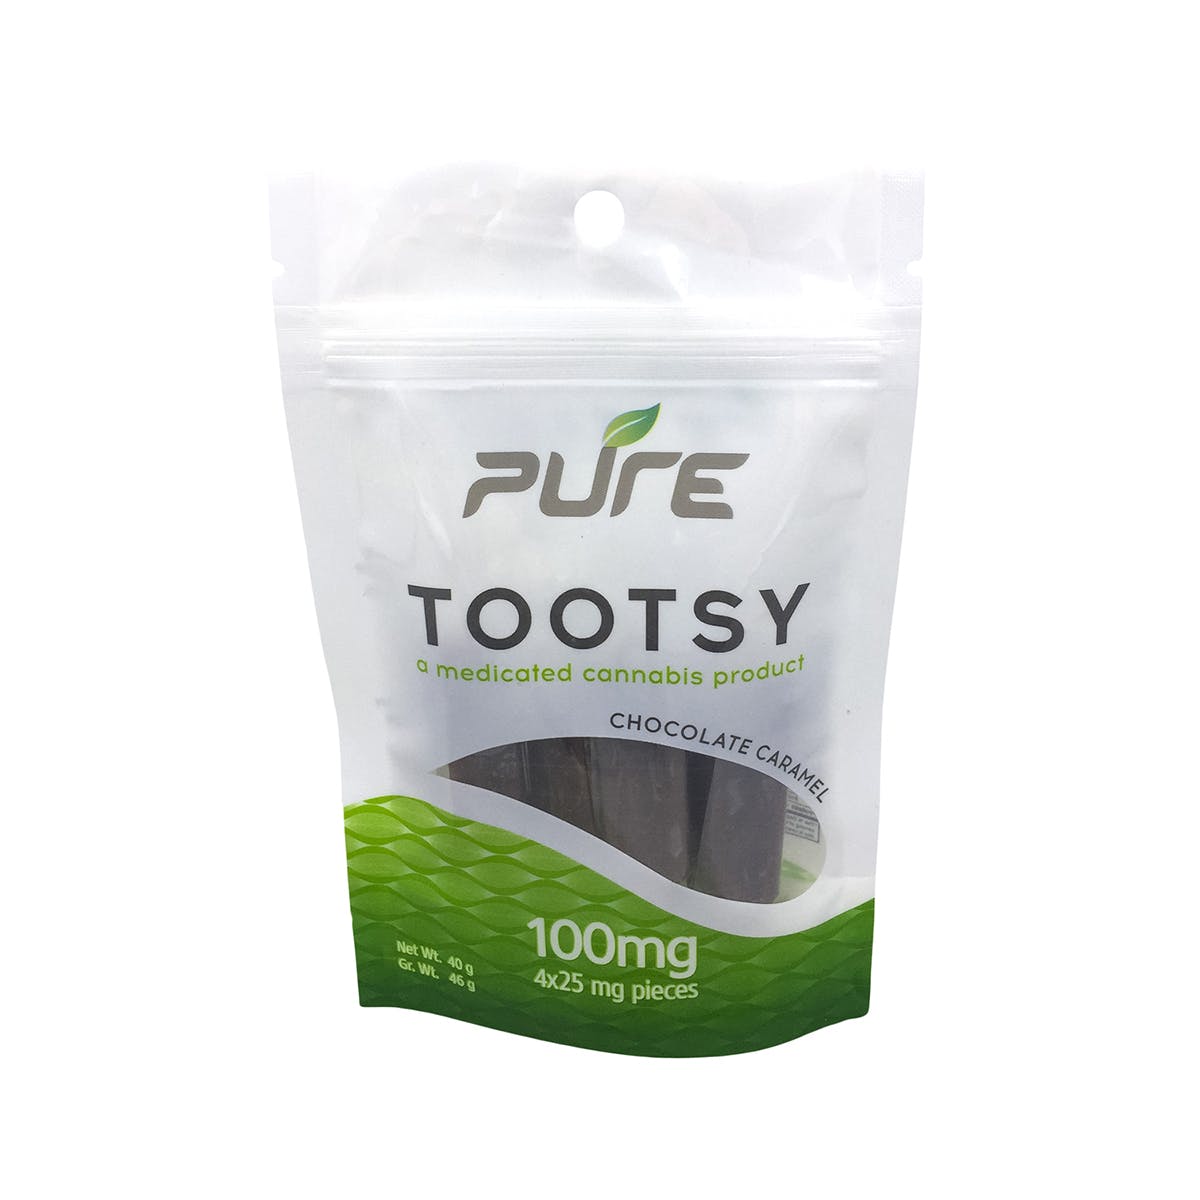 Pure Tootsy 100mg